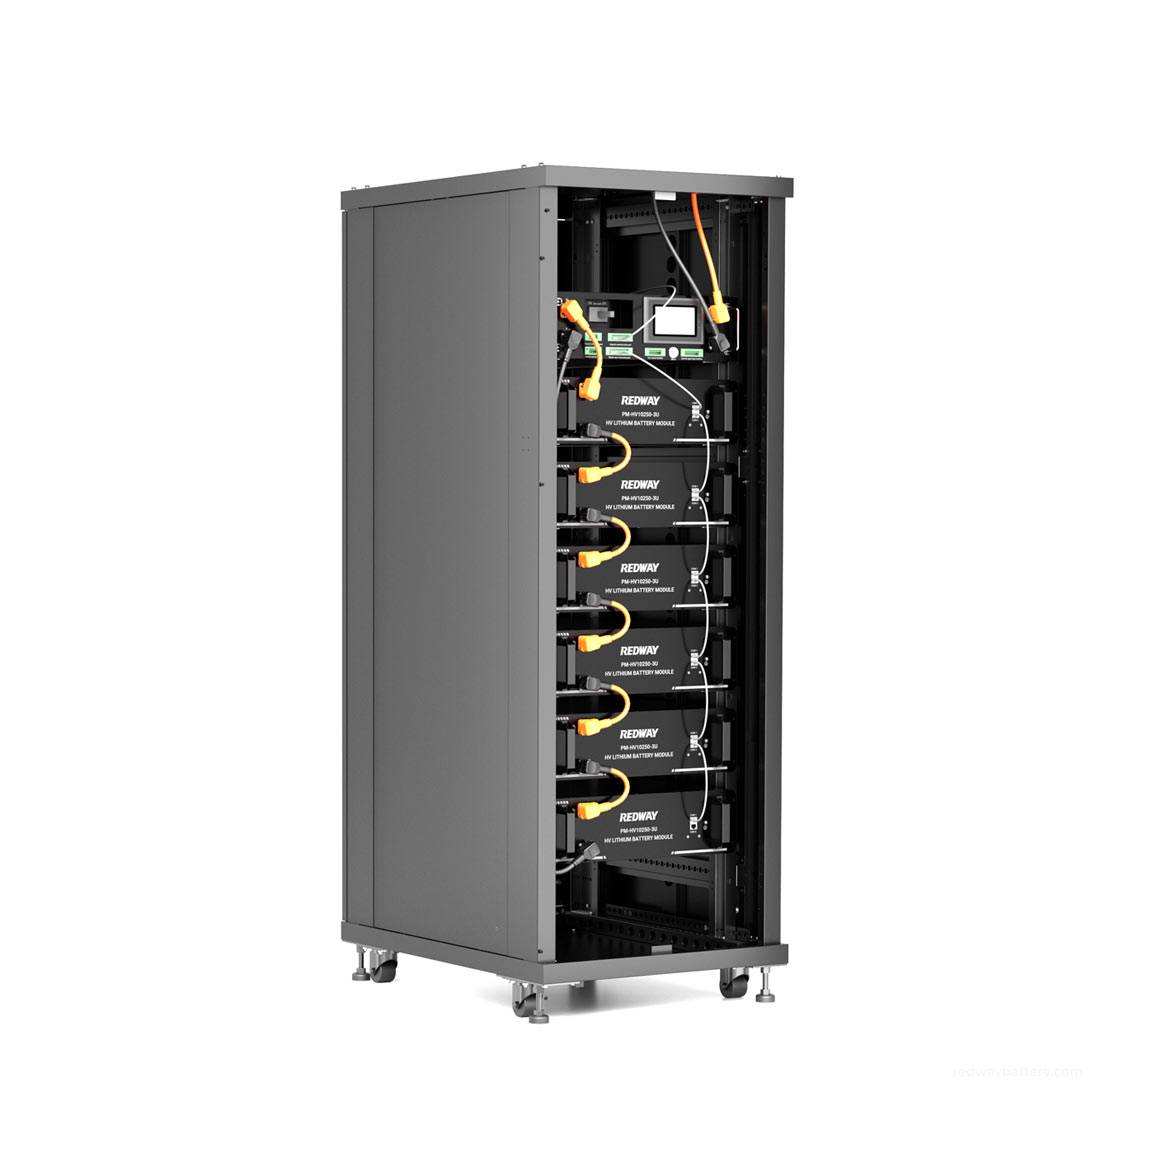 PM-HV10250-3U 100V 50Ah High Voltage Lithium Battery Module Rack System for C&I ESS Energy Storage System